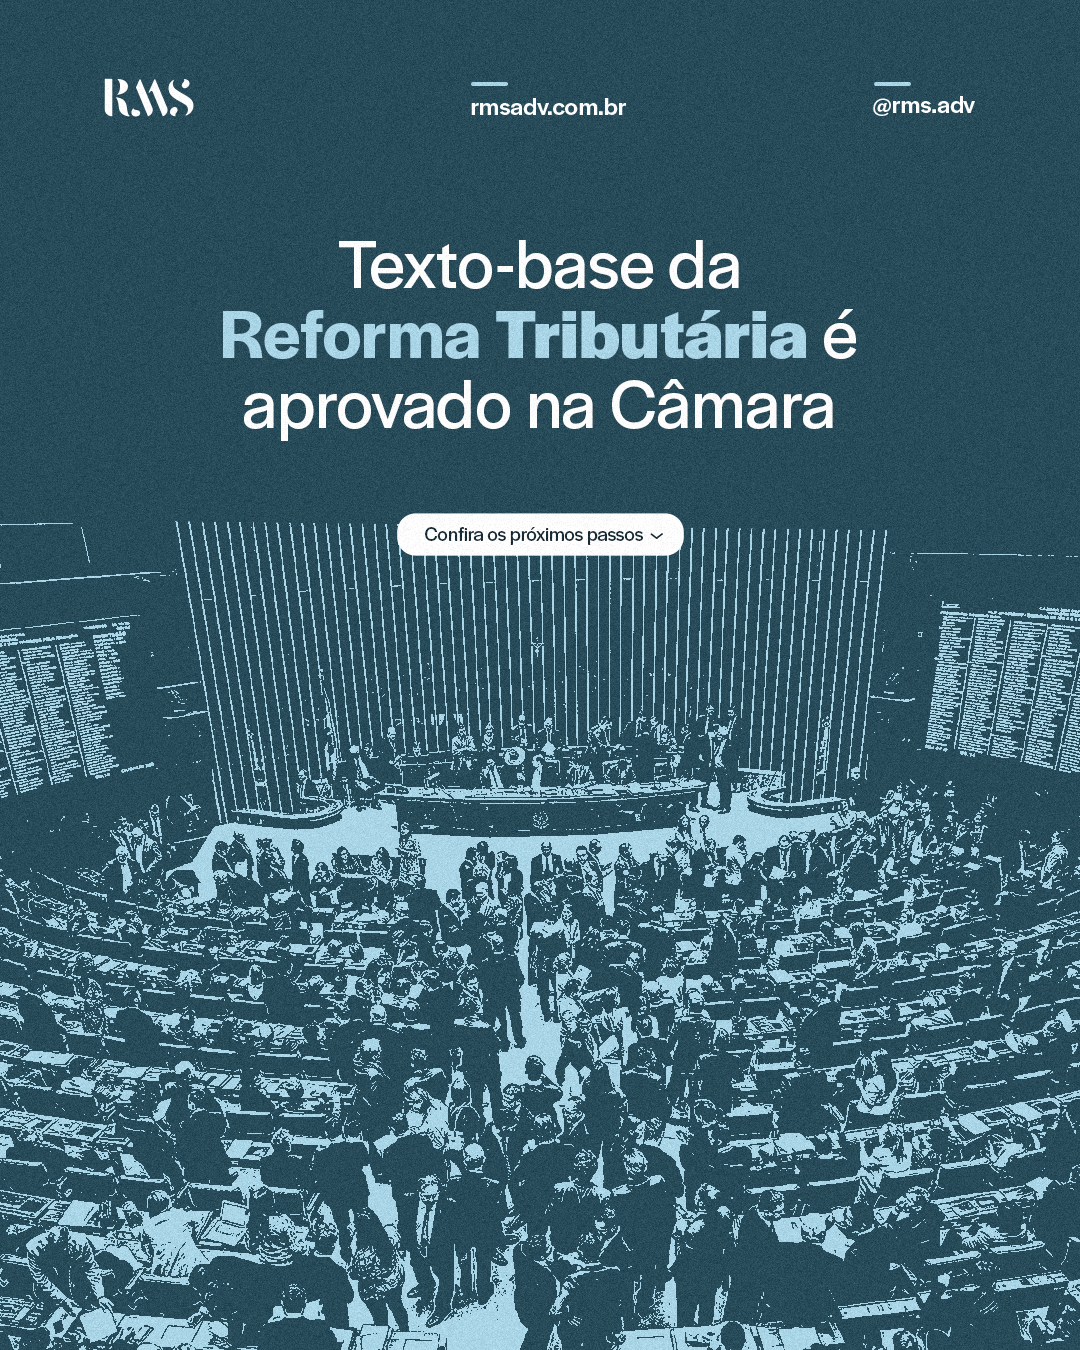 Texto-base da reforma tributária é aprovado na Câmara : Confira os próximos passos!